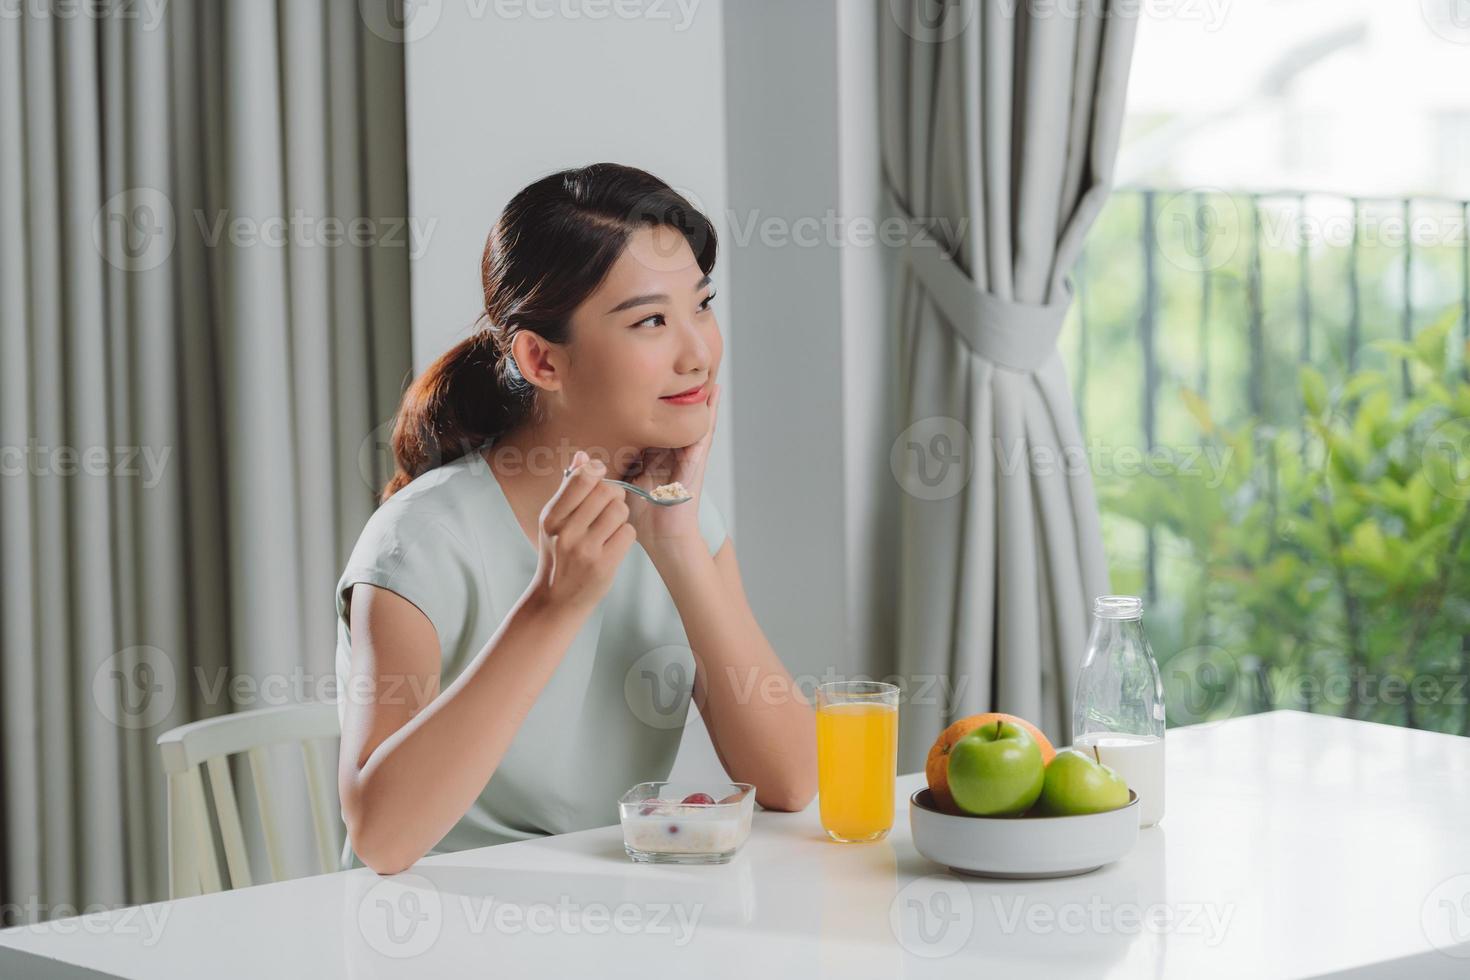 attent jong vrouw in badjas aan het eten ontbijt in keuken foto